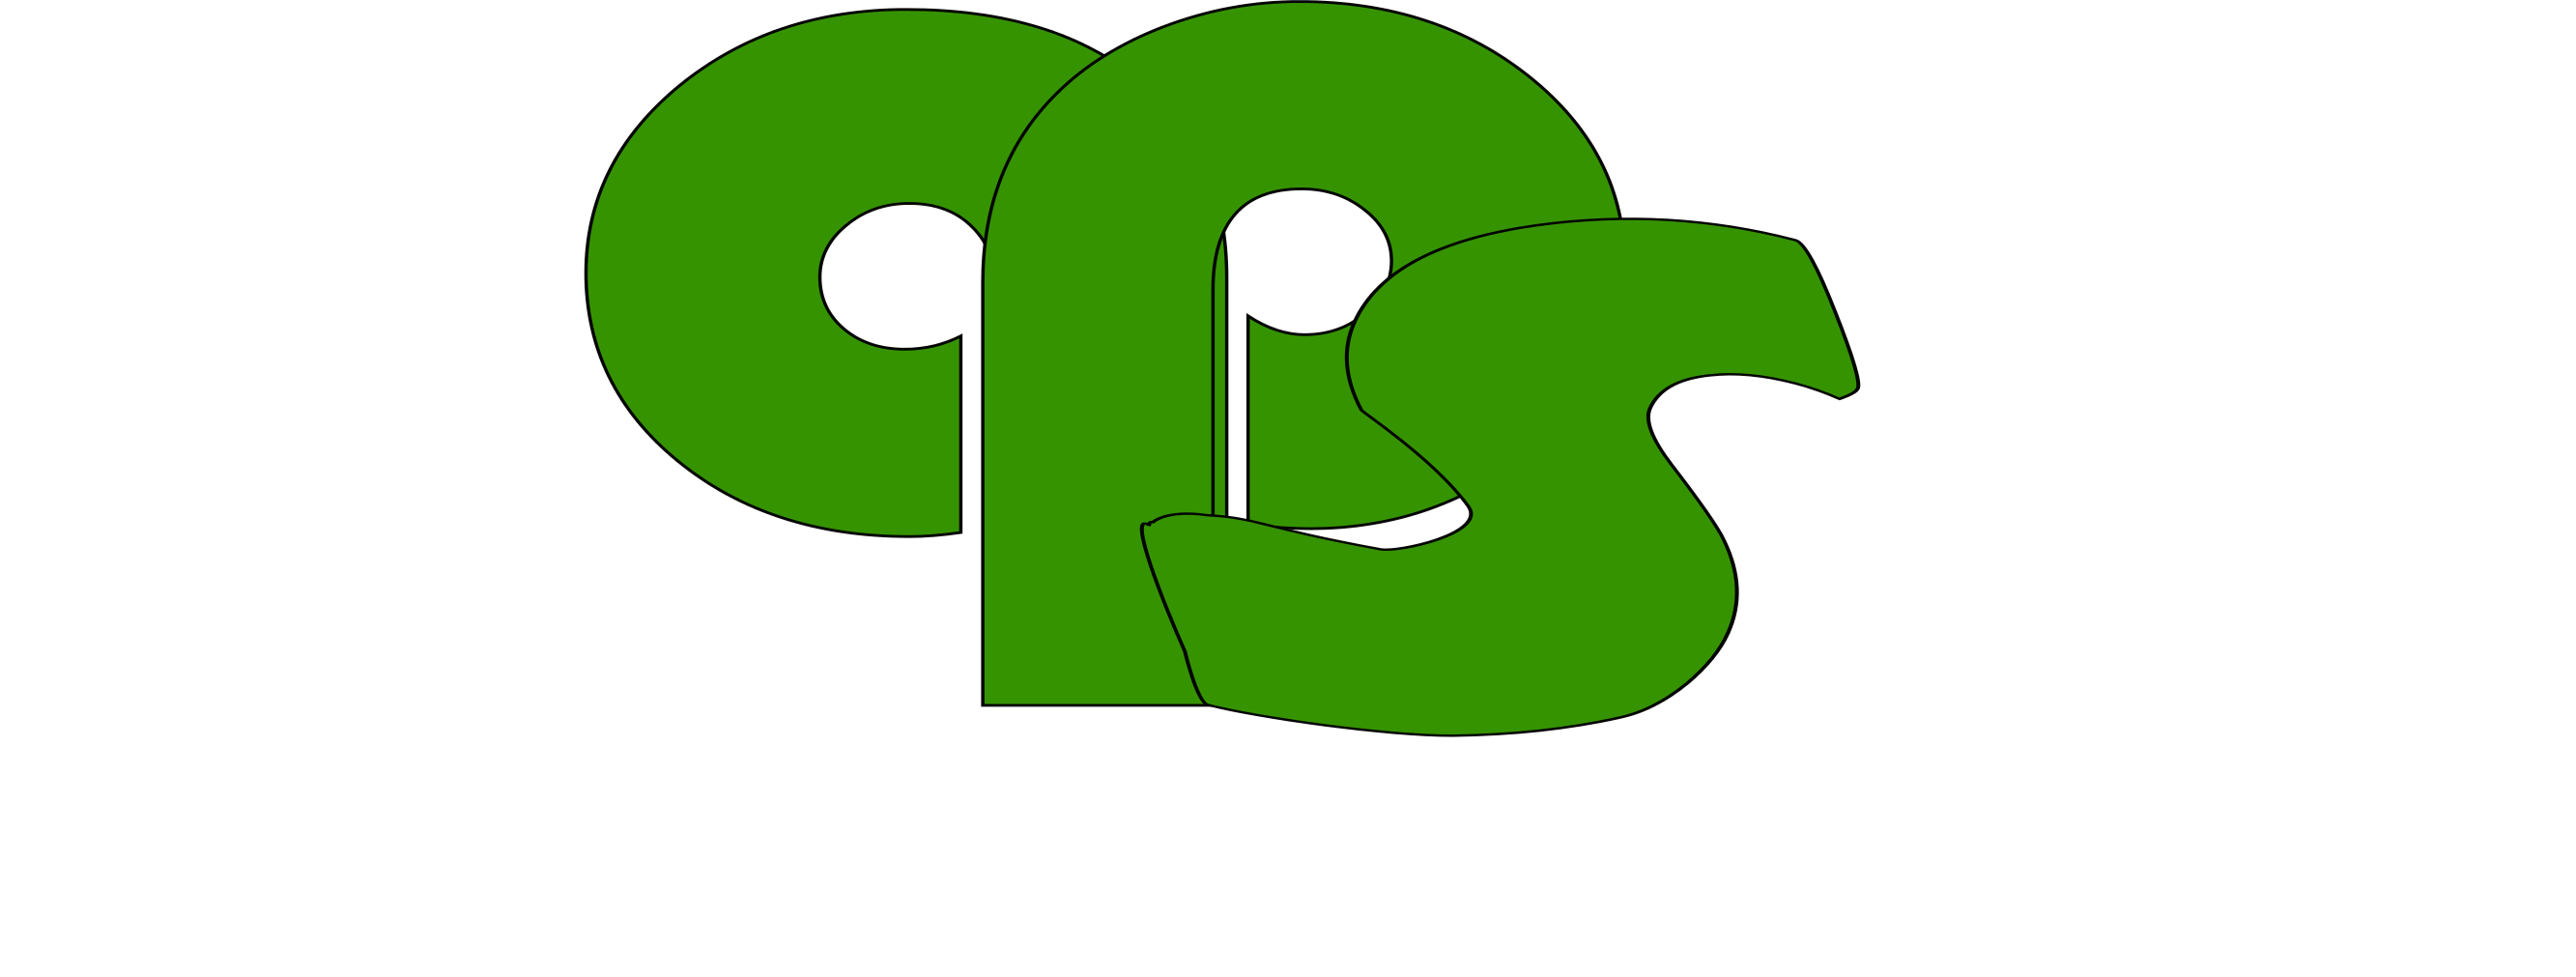 Arise Primecare Services